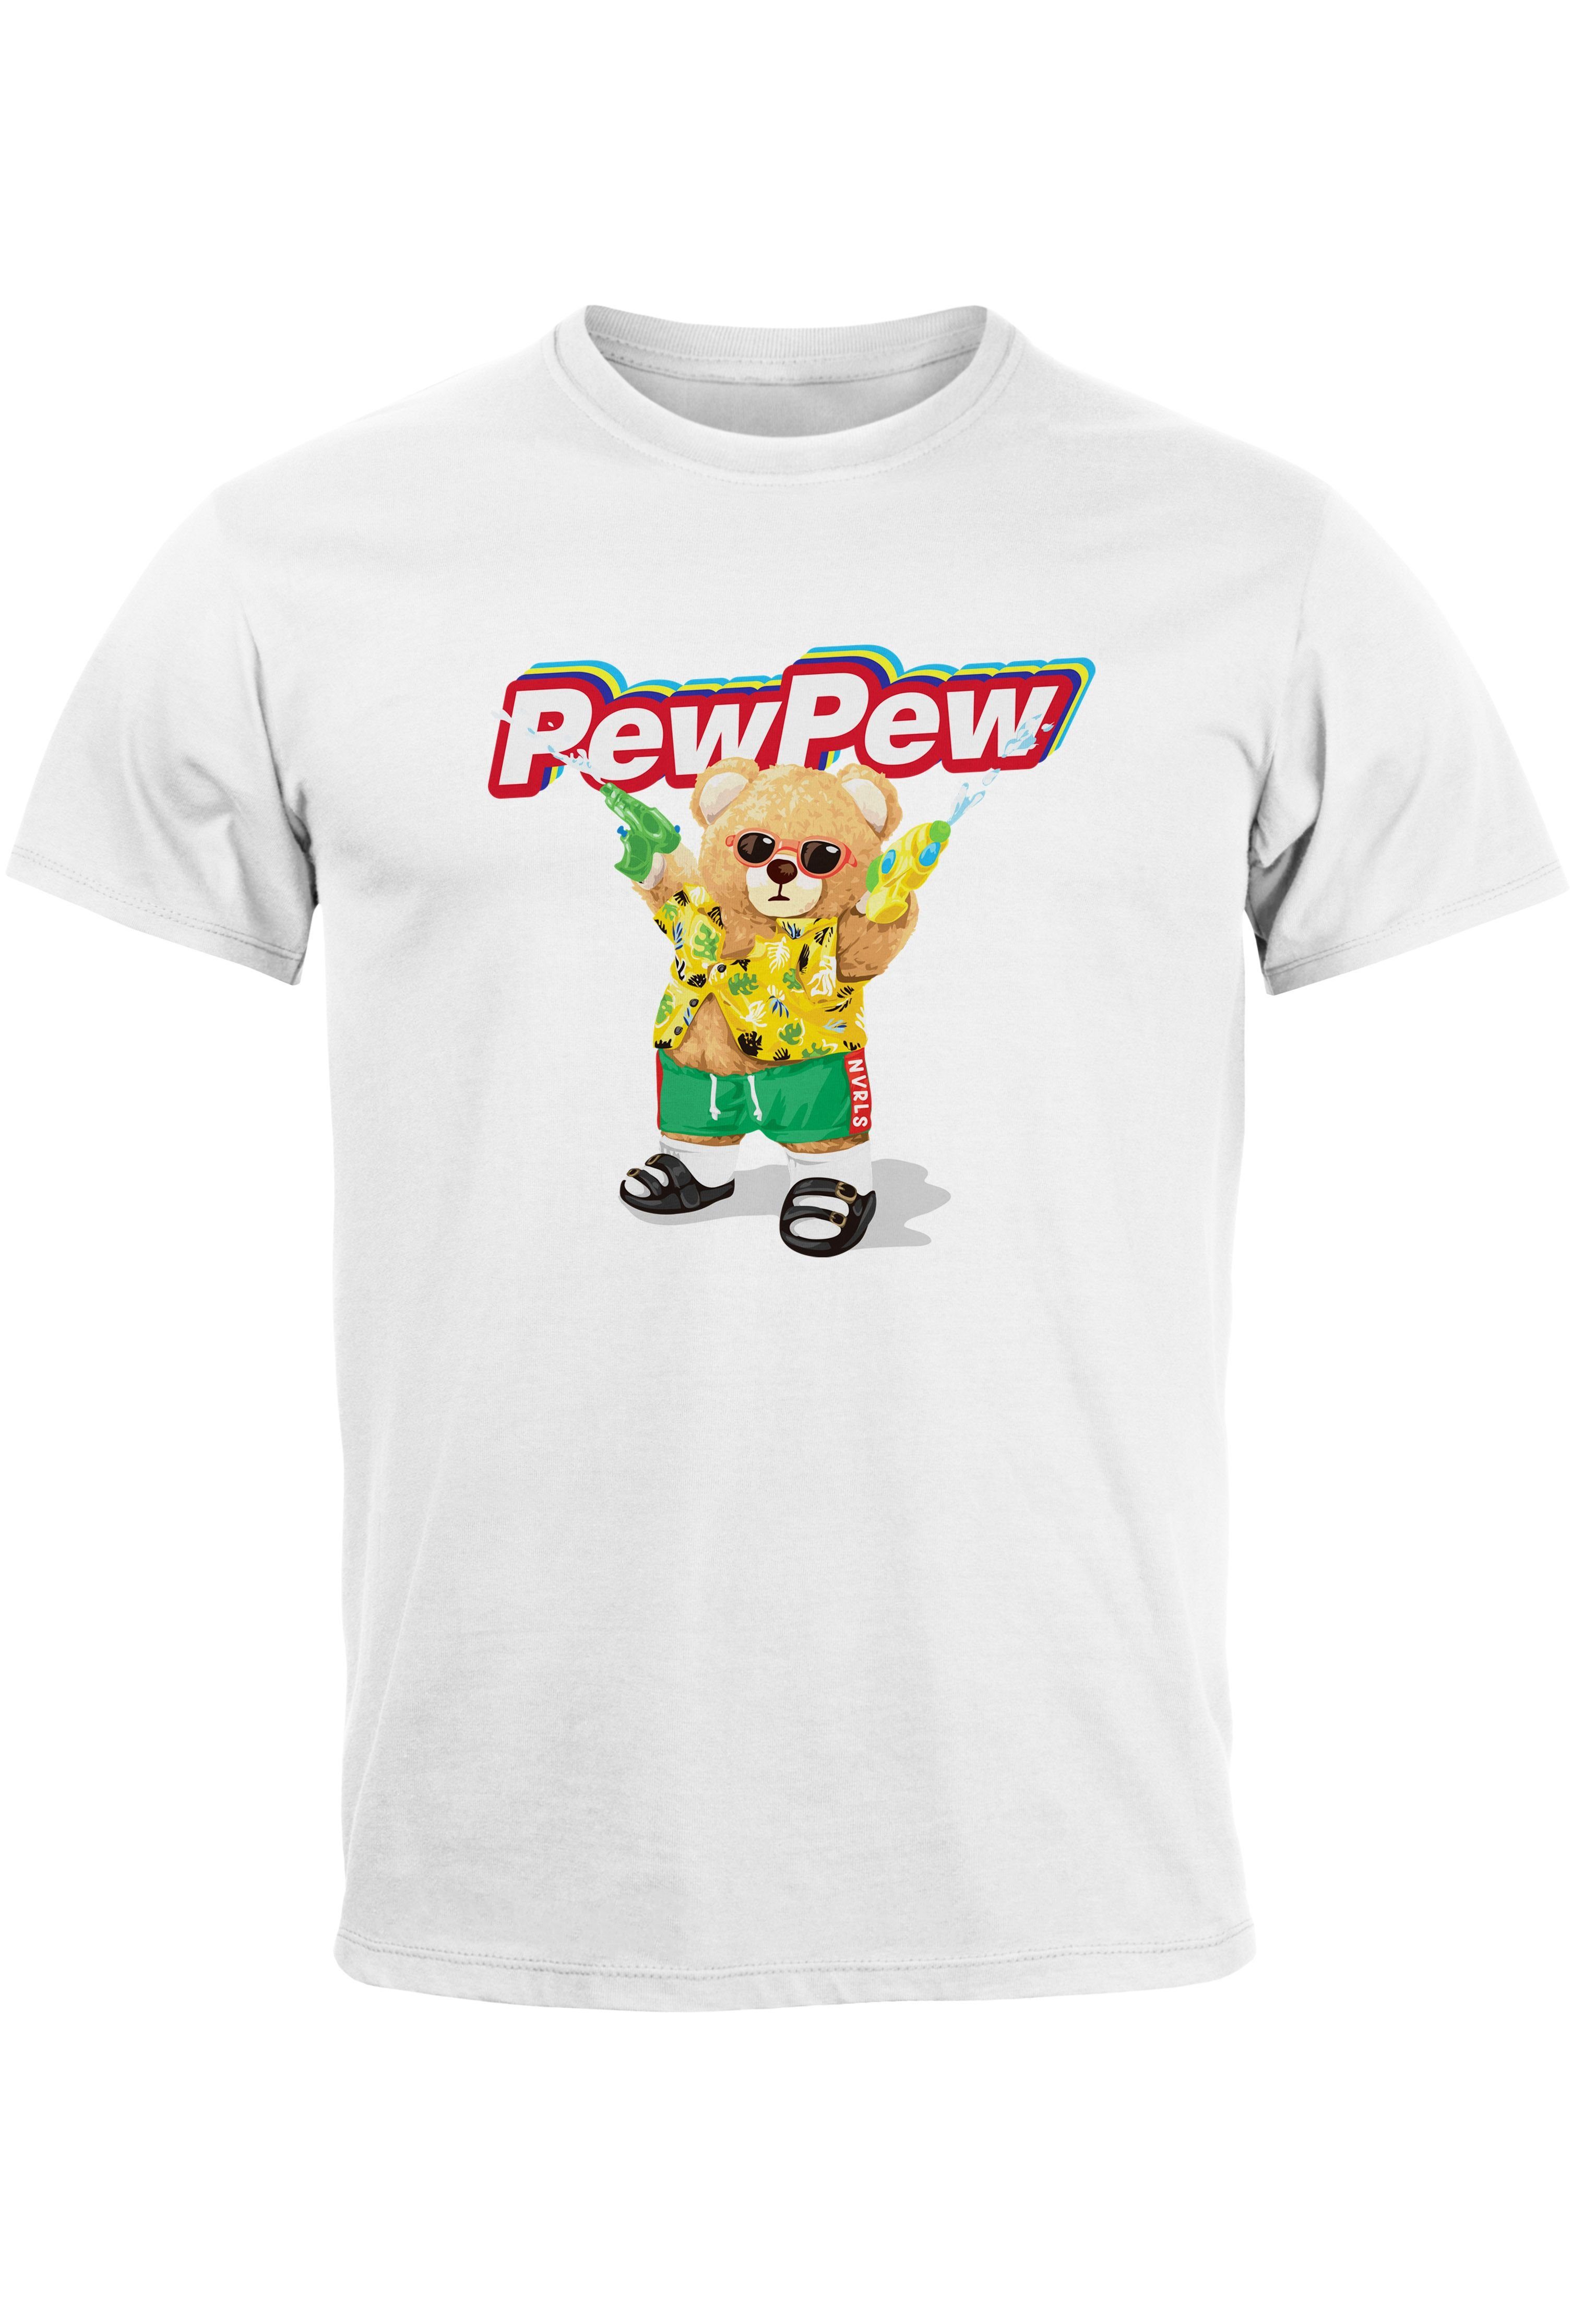 Print-Shirt weiß Neverless Sommer Bär Motiv Herren Print Pew Pew Aufdruck T-Shirt mit Printshirt lustig Fas